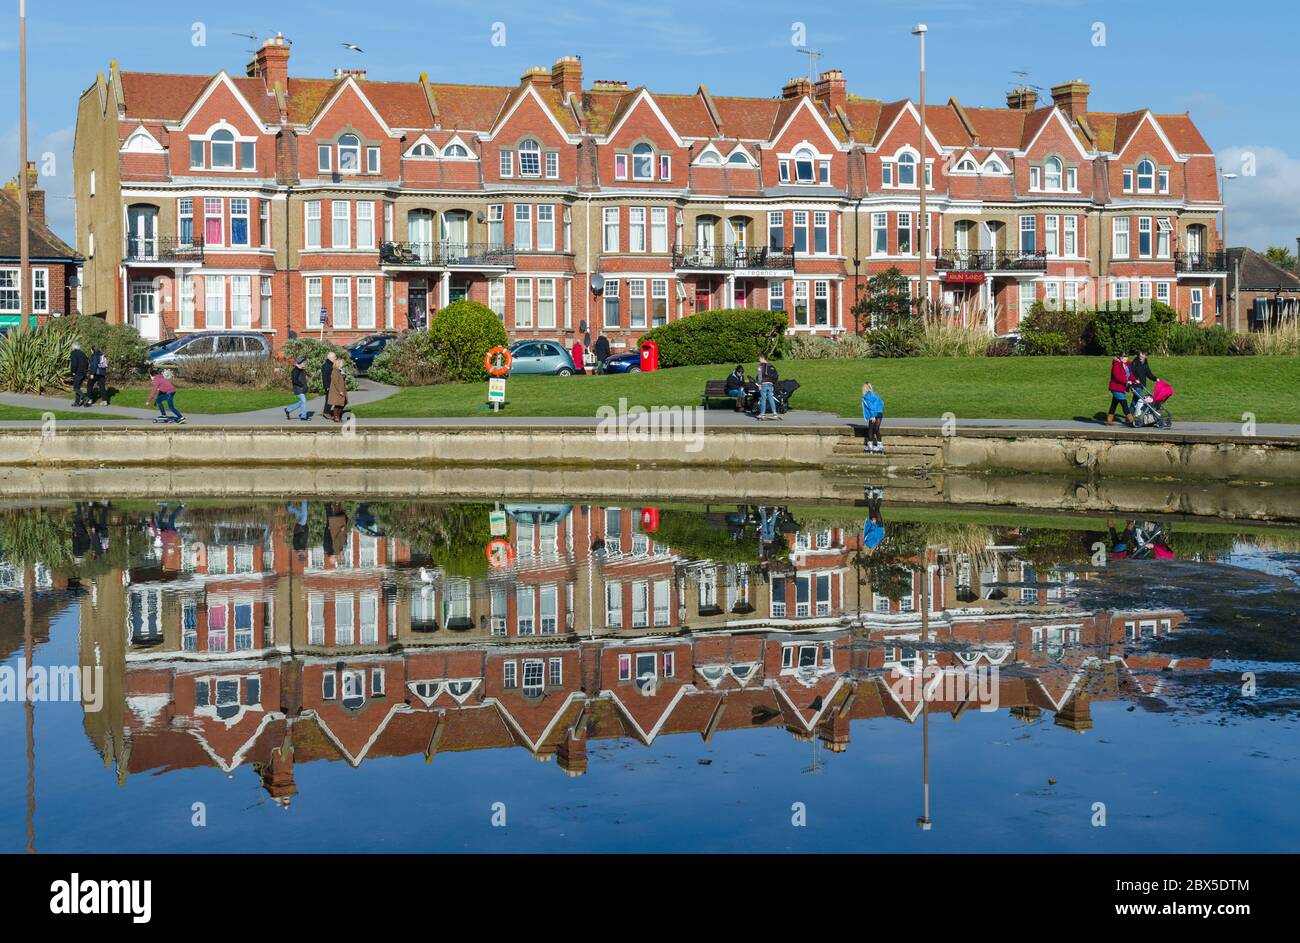 Maisons en terrasse victorienne avec reflets dans le lac voisin de Littlehampton, West Sussex, Angleterre, Royaume-Uni. Maison victorienne Royaume-Uni. Banque D'Images